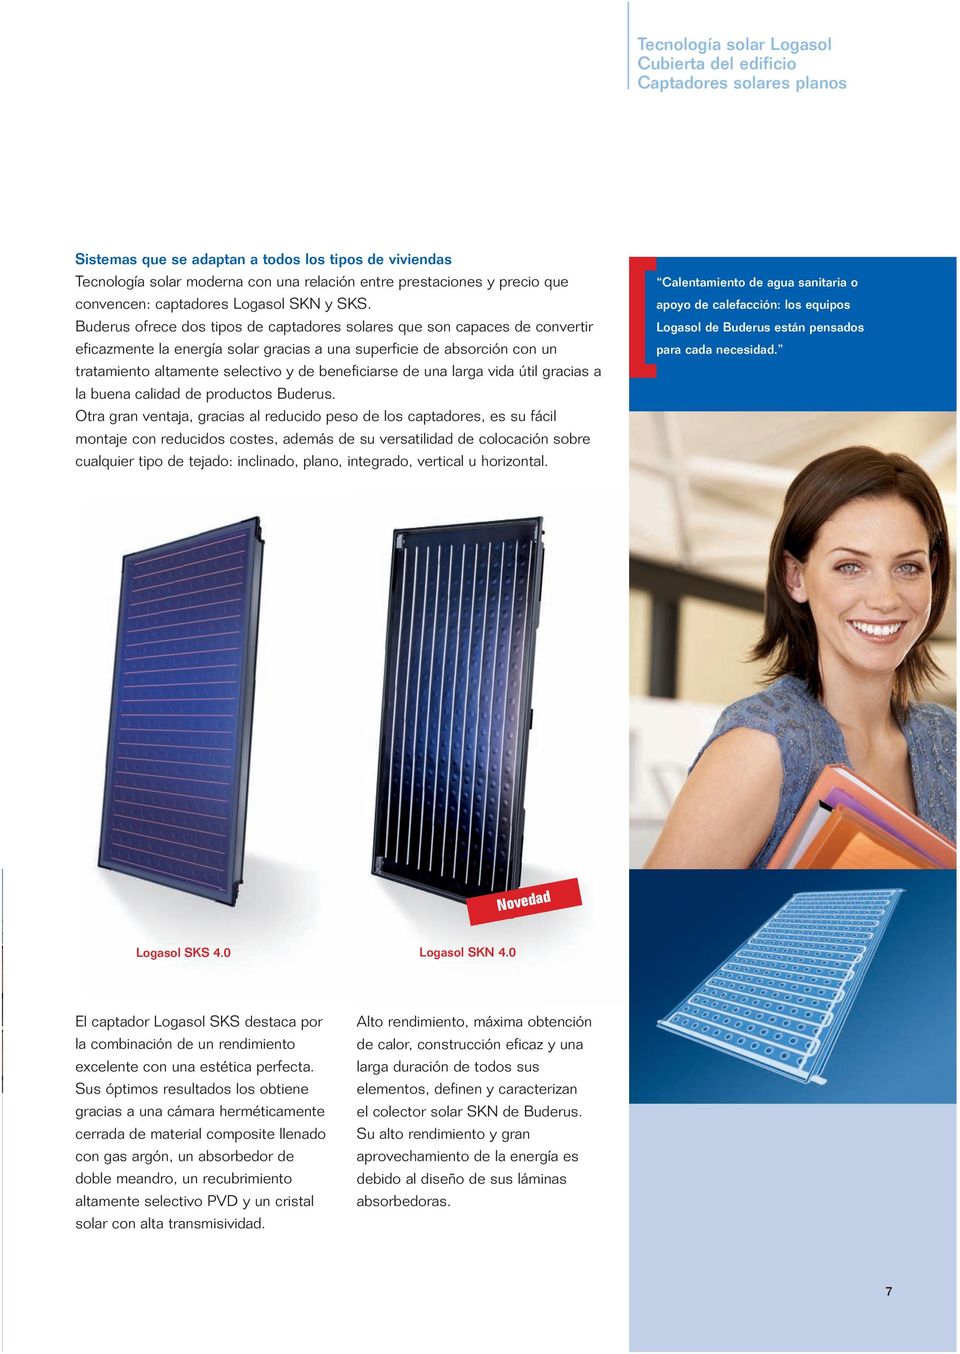 Buderus ofrece dos tipos de captadores solares que son capaces de convertir eficazmente la energía solar gracias a una superficie de absorción con un tratamiento altamente selectivo y de beneficiarse